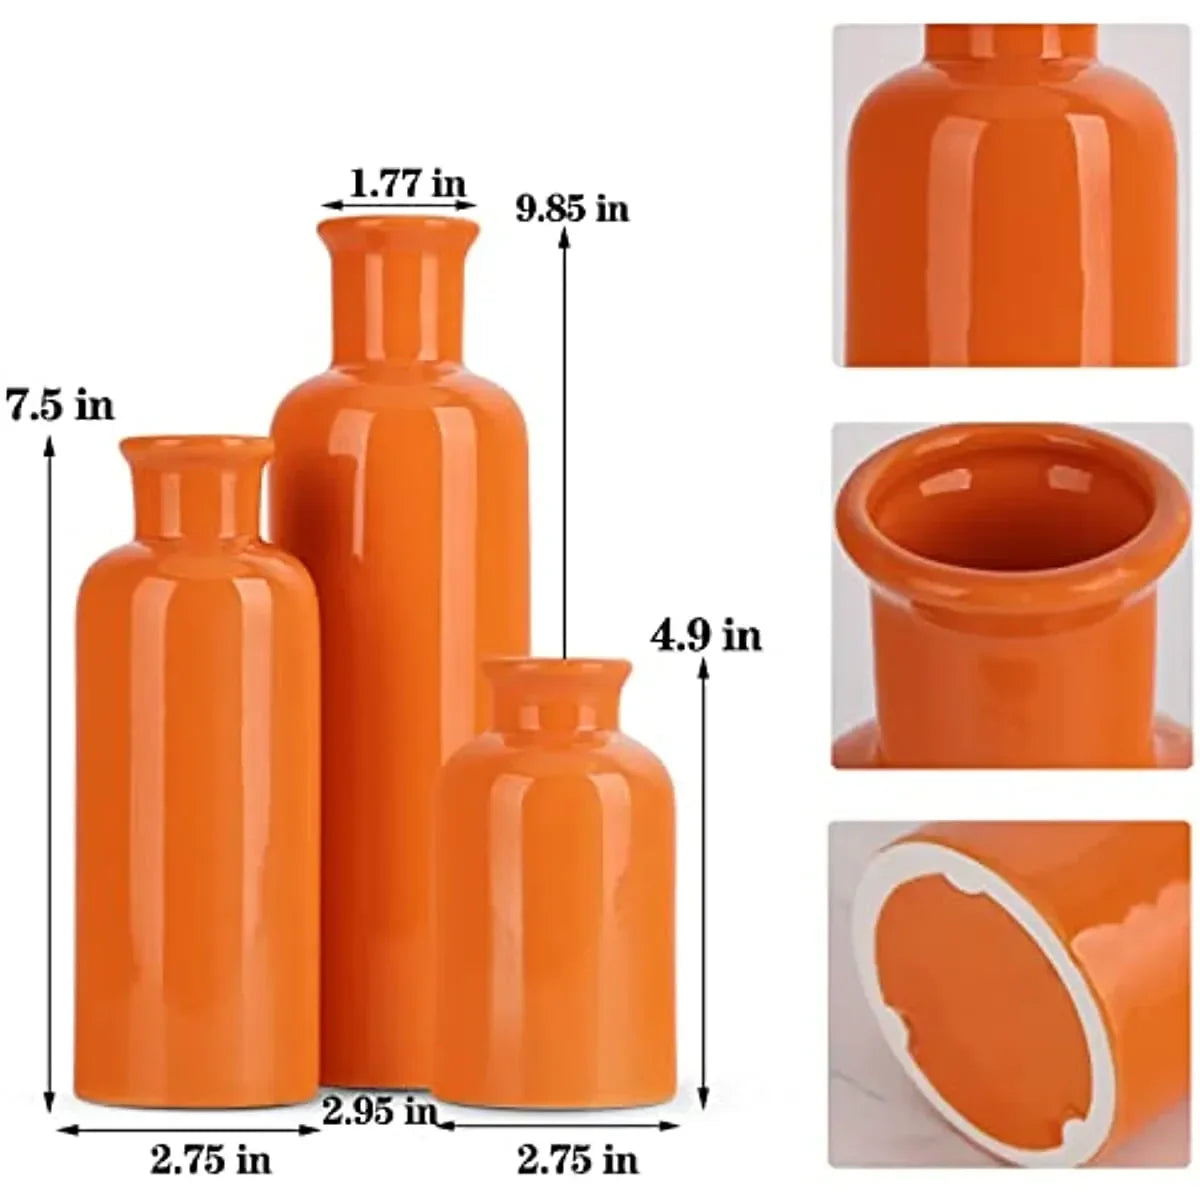 Vas seramik oren yang ditetapkan untuk 3 hiasan minimalis moden boho vas rumah ladang rumah hiasan aksen ruang tamu pusat